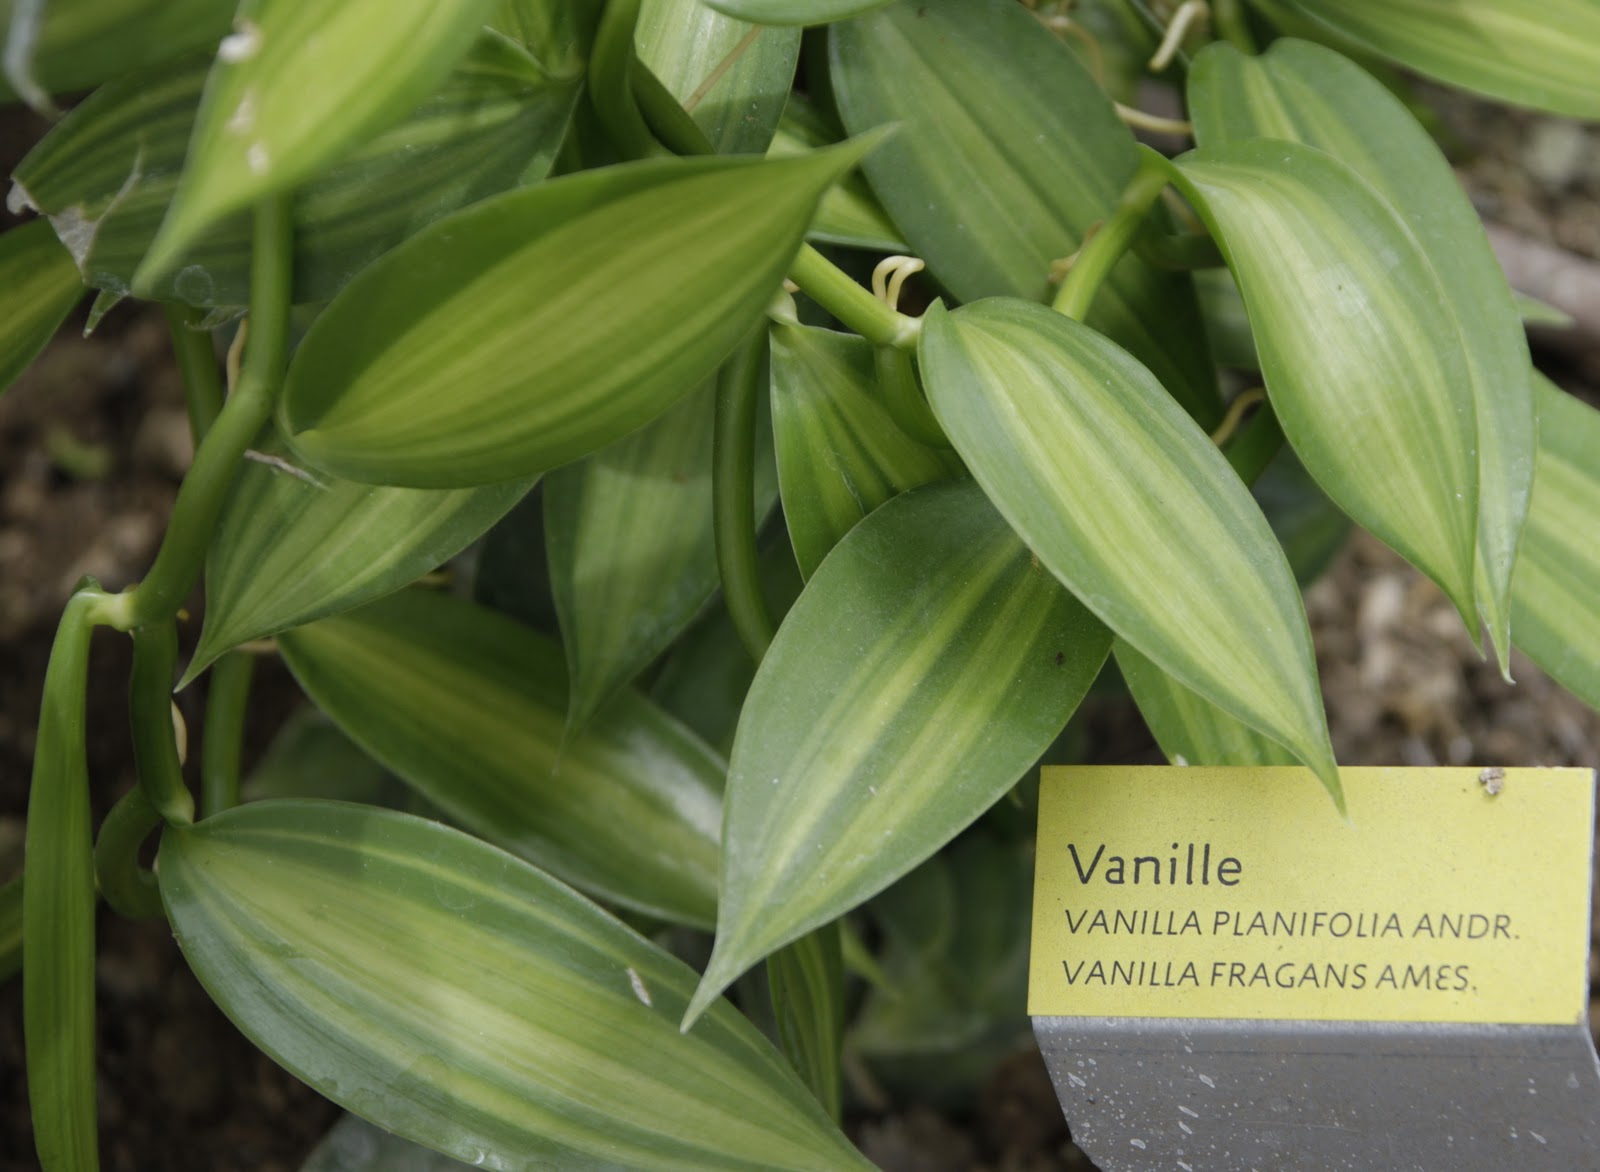 Ваниль плосколистная (Vanilla planifolia). Ваниль стручковая как растет. Myrcianthes fragans. Ванильные язычки. Vanilla plants